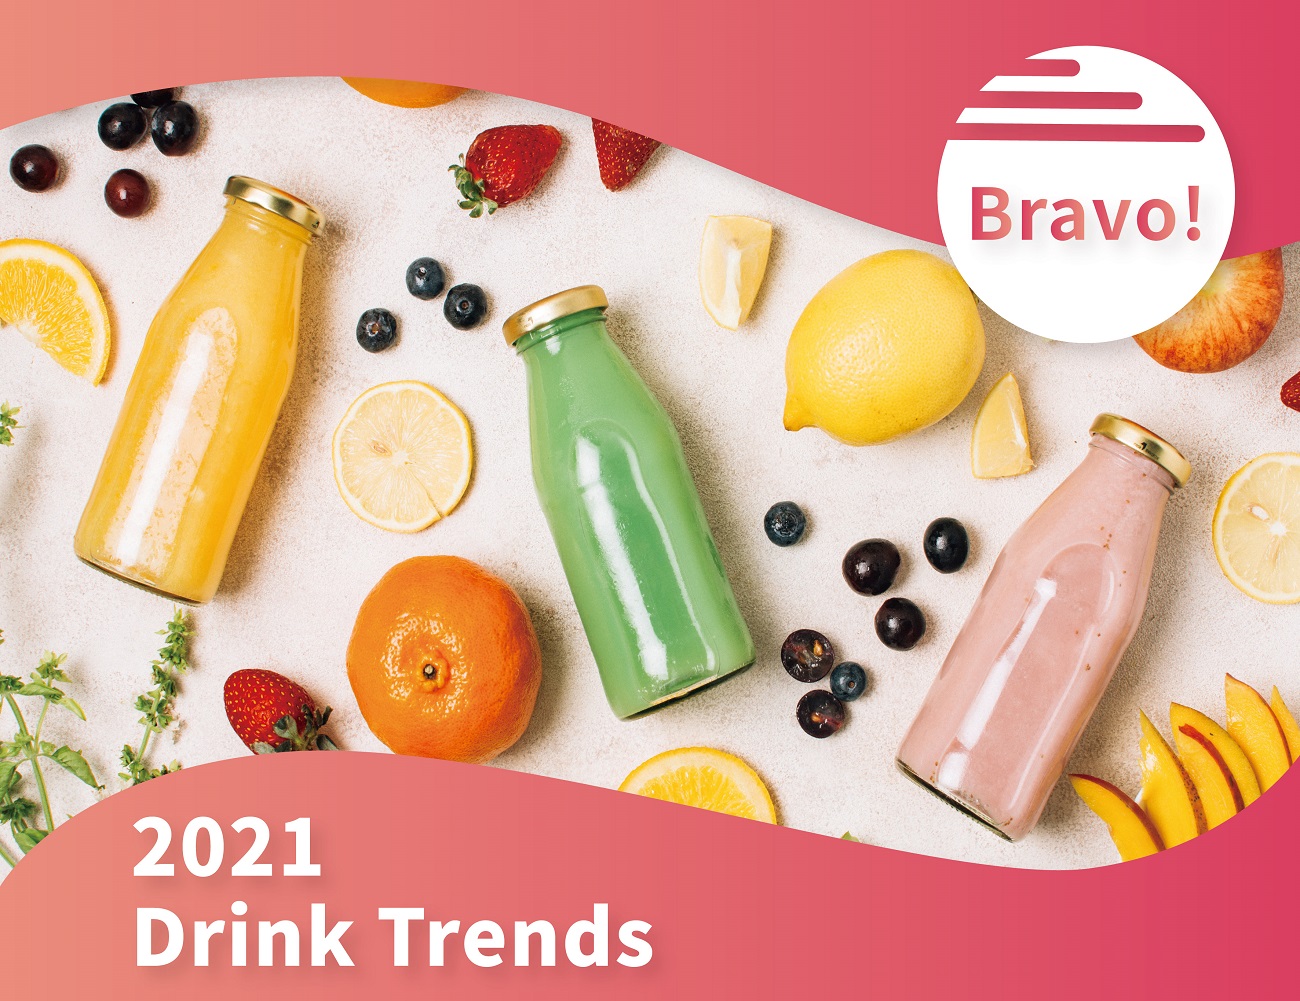 1. 2021 Drink Trends 首圖